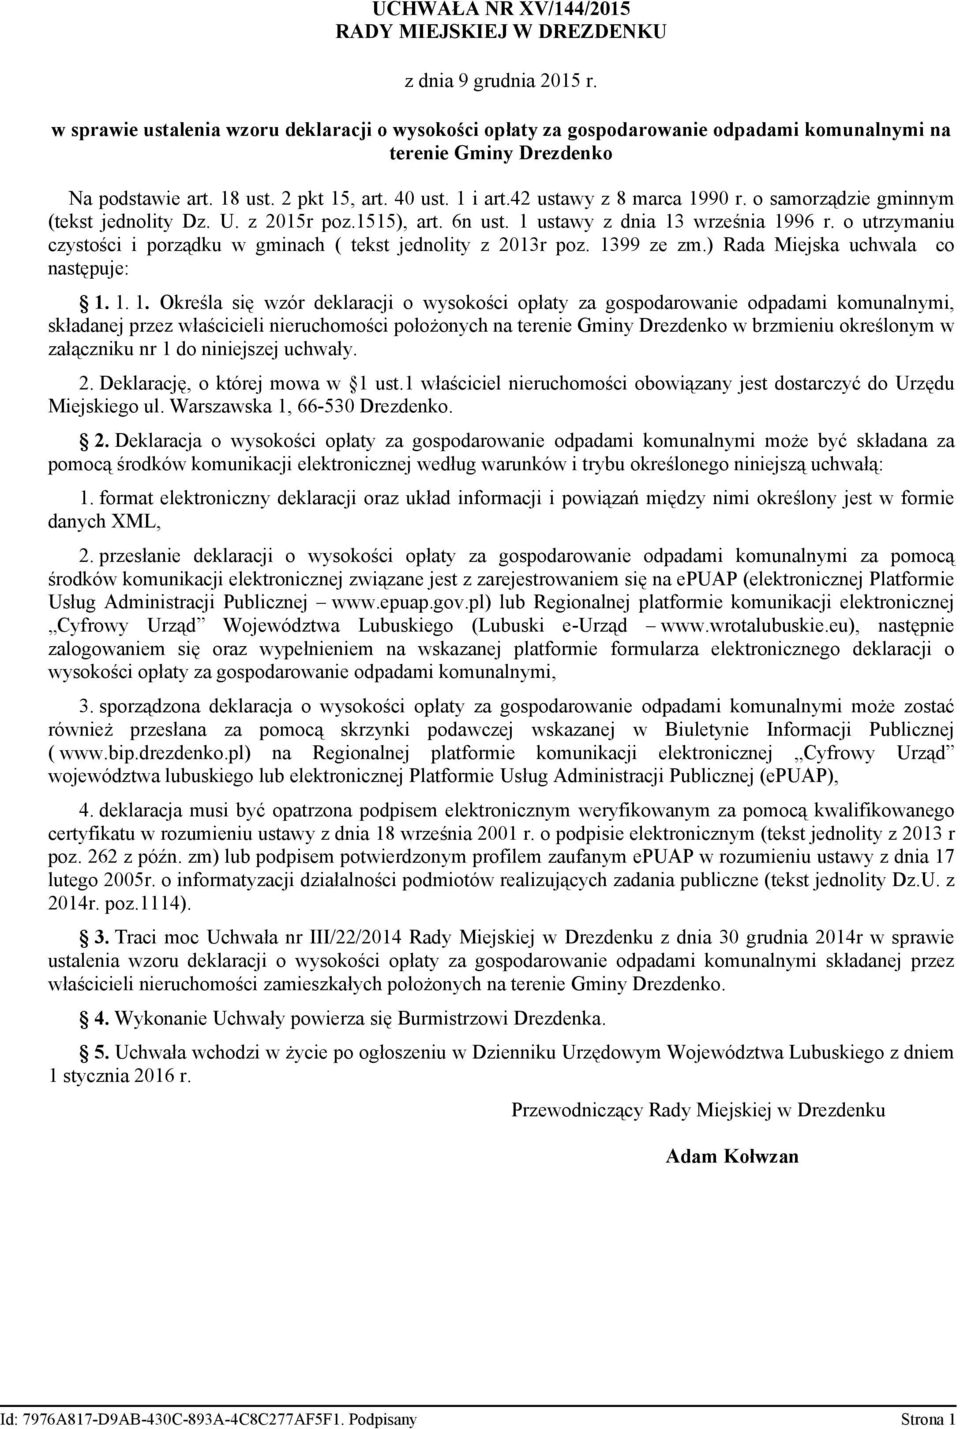 42 ustawy z 8 marca 1990 r. o samorządzie gminnym (tekst jednolity Dz. U. z 2015r poz.1515), art. 6n ust. 1 ustawy z dnia 13 września 1996 r.